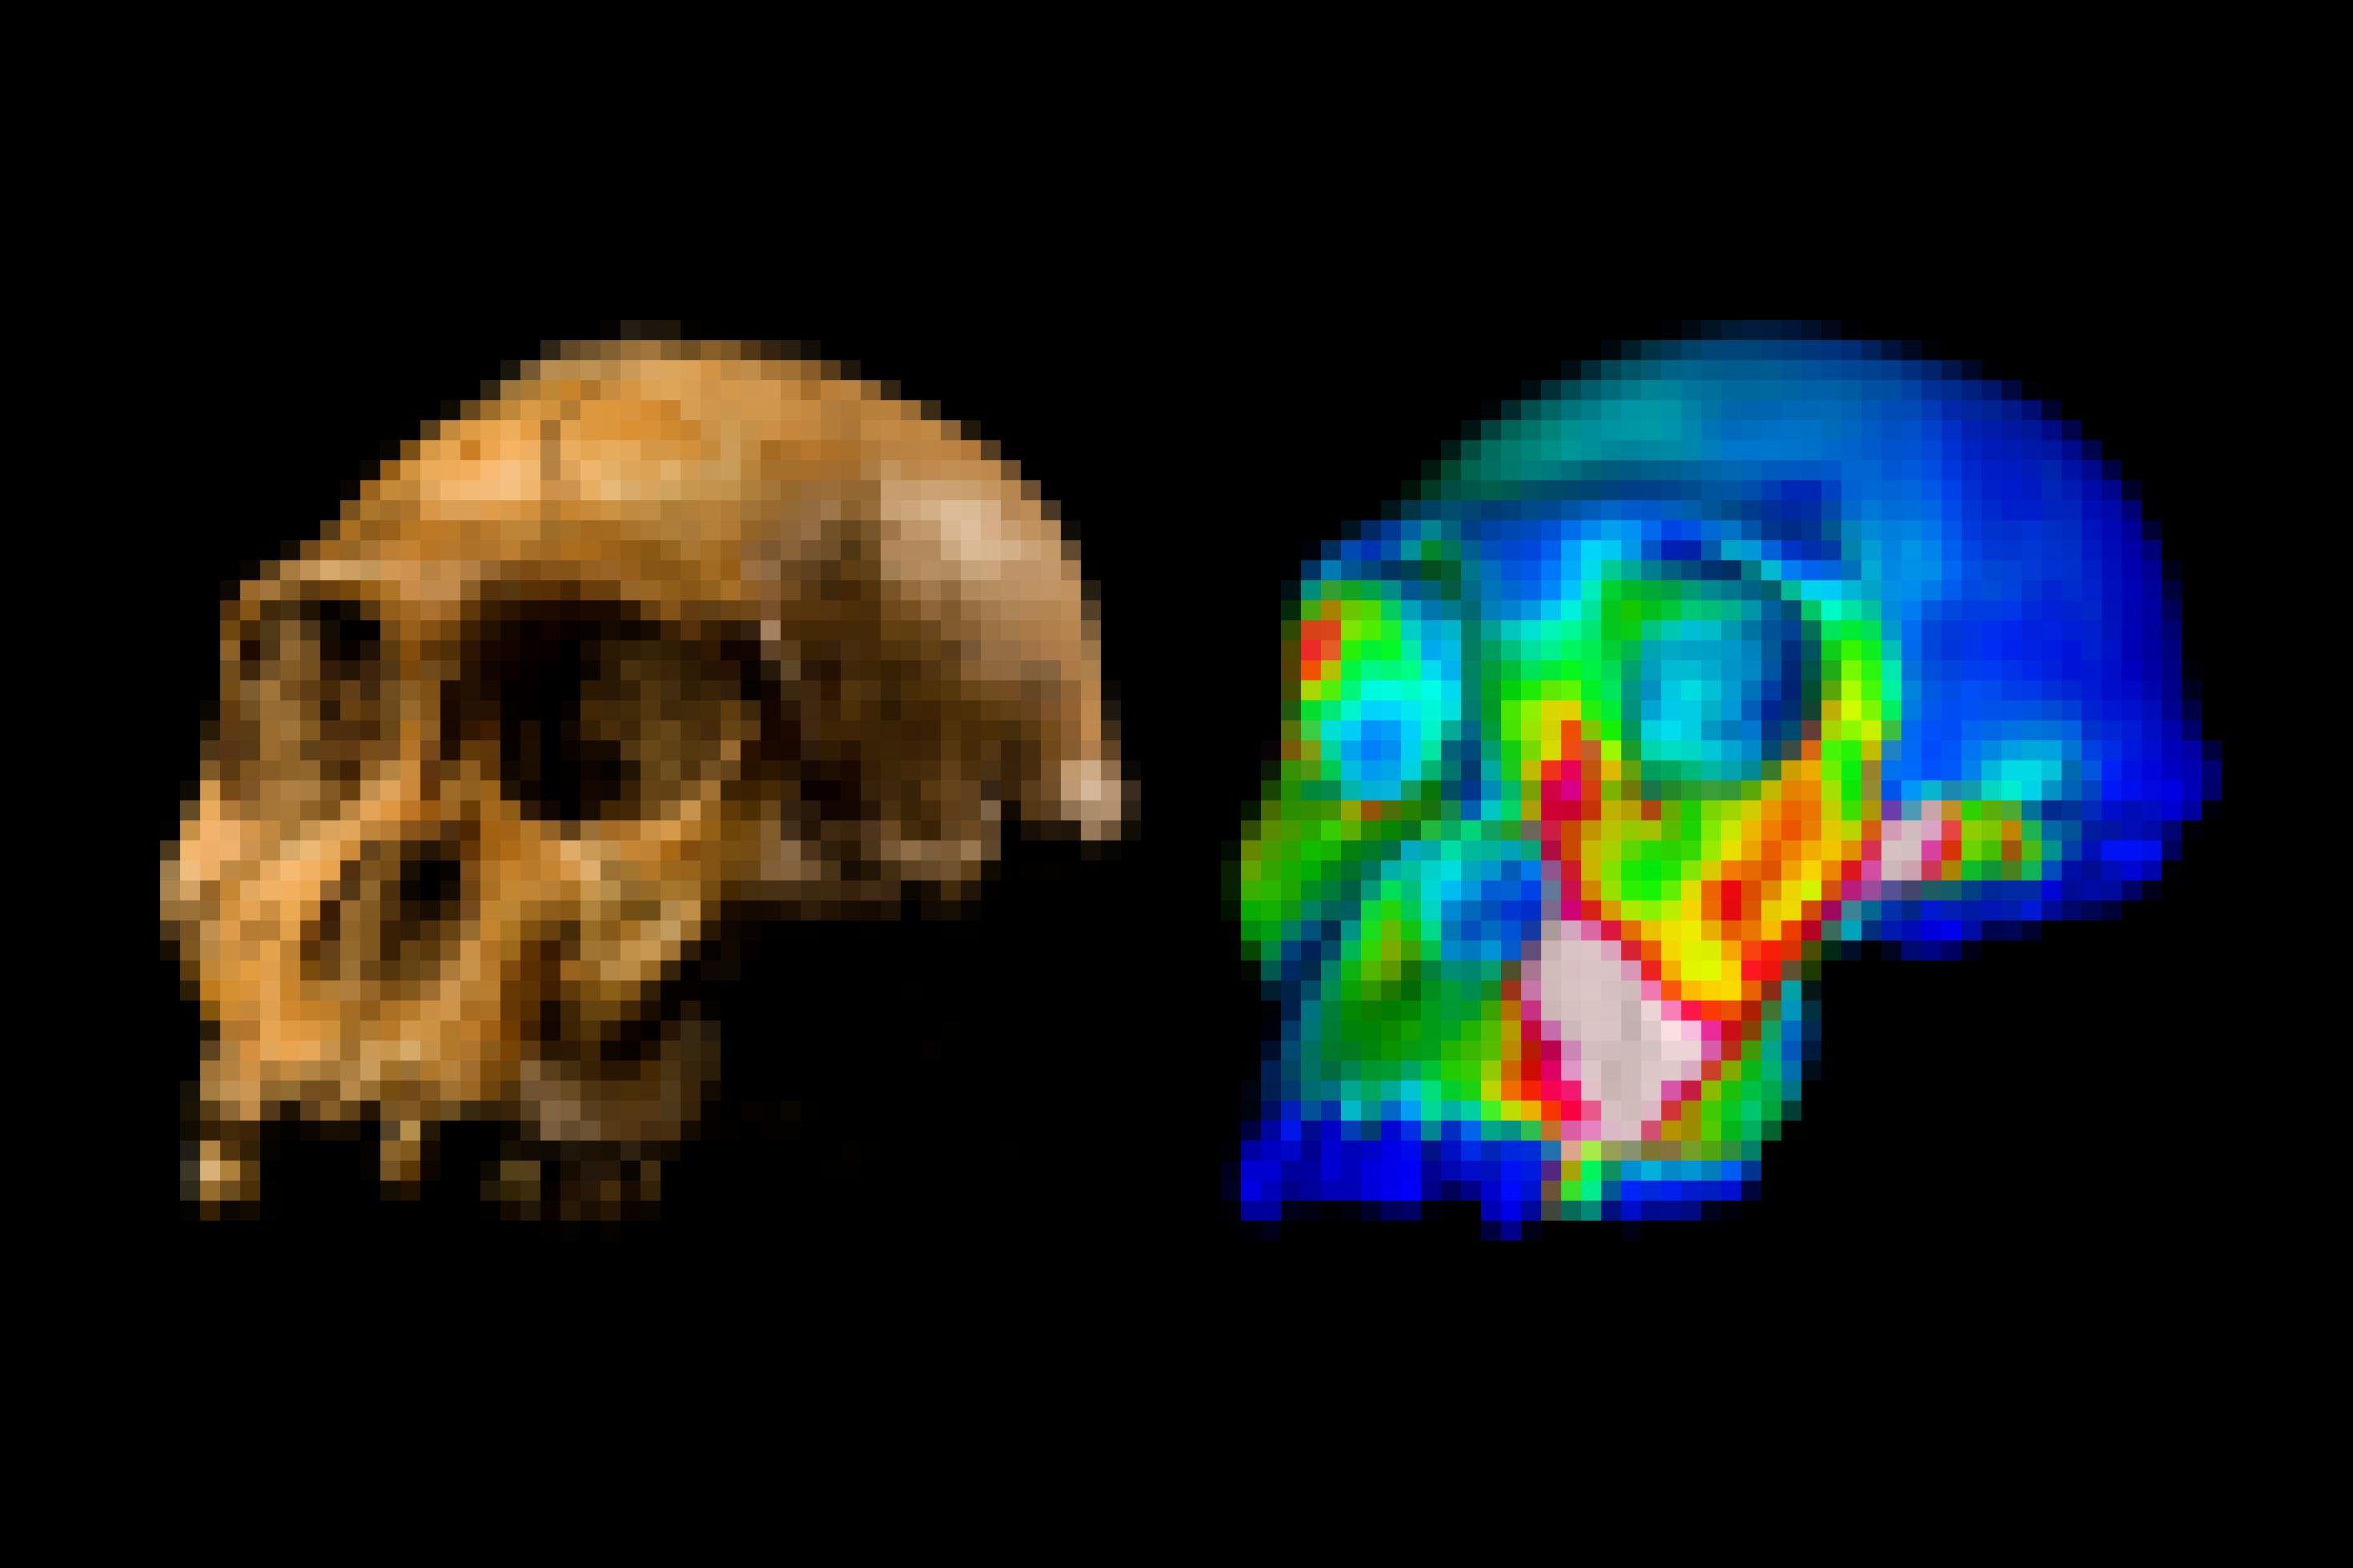 Links ist ein fossiler Schädel ohne Unterkiefer zu sehen, halb von vorne und halb von der linken Seite gezeigt. Rechts daneben findet sich eine simulierte Darstellung desselben Schädels, in dem verschiedene Bereiche farbig dargestellt sind: Der Hirnschädel etwa dunkelblau, das Gesicht überwiegend grünlich, über den Vorbackenzähnen sowie dem Wangenknochen jedoch gelb und rot.